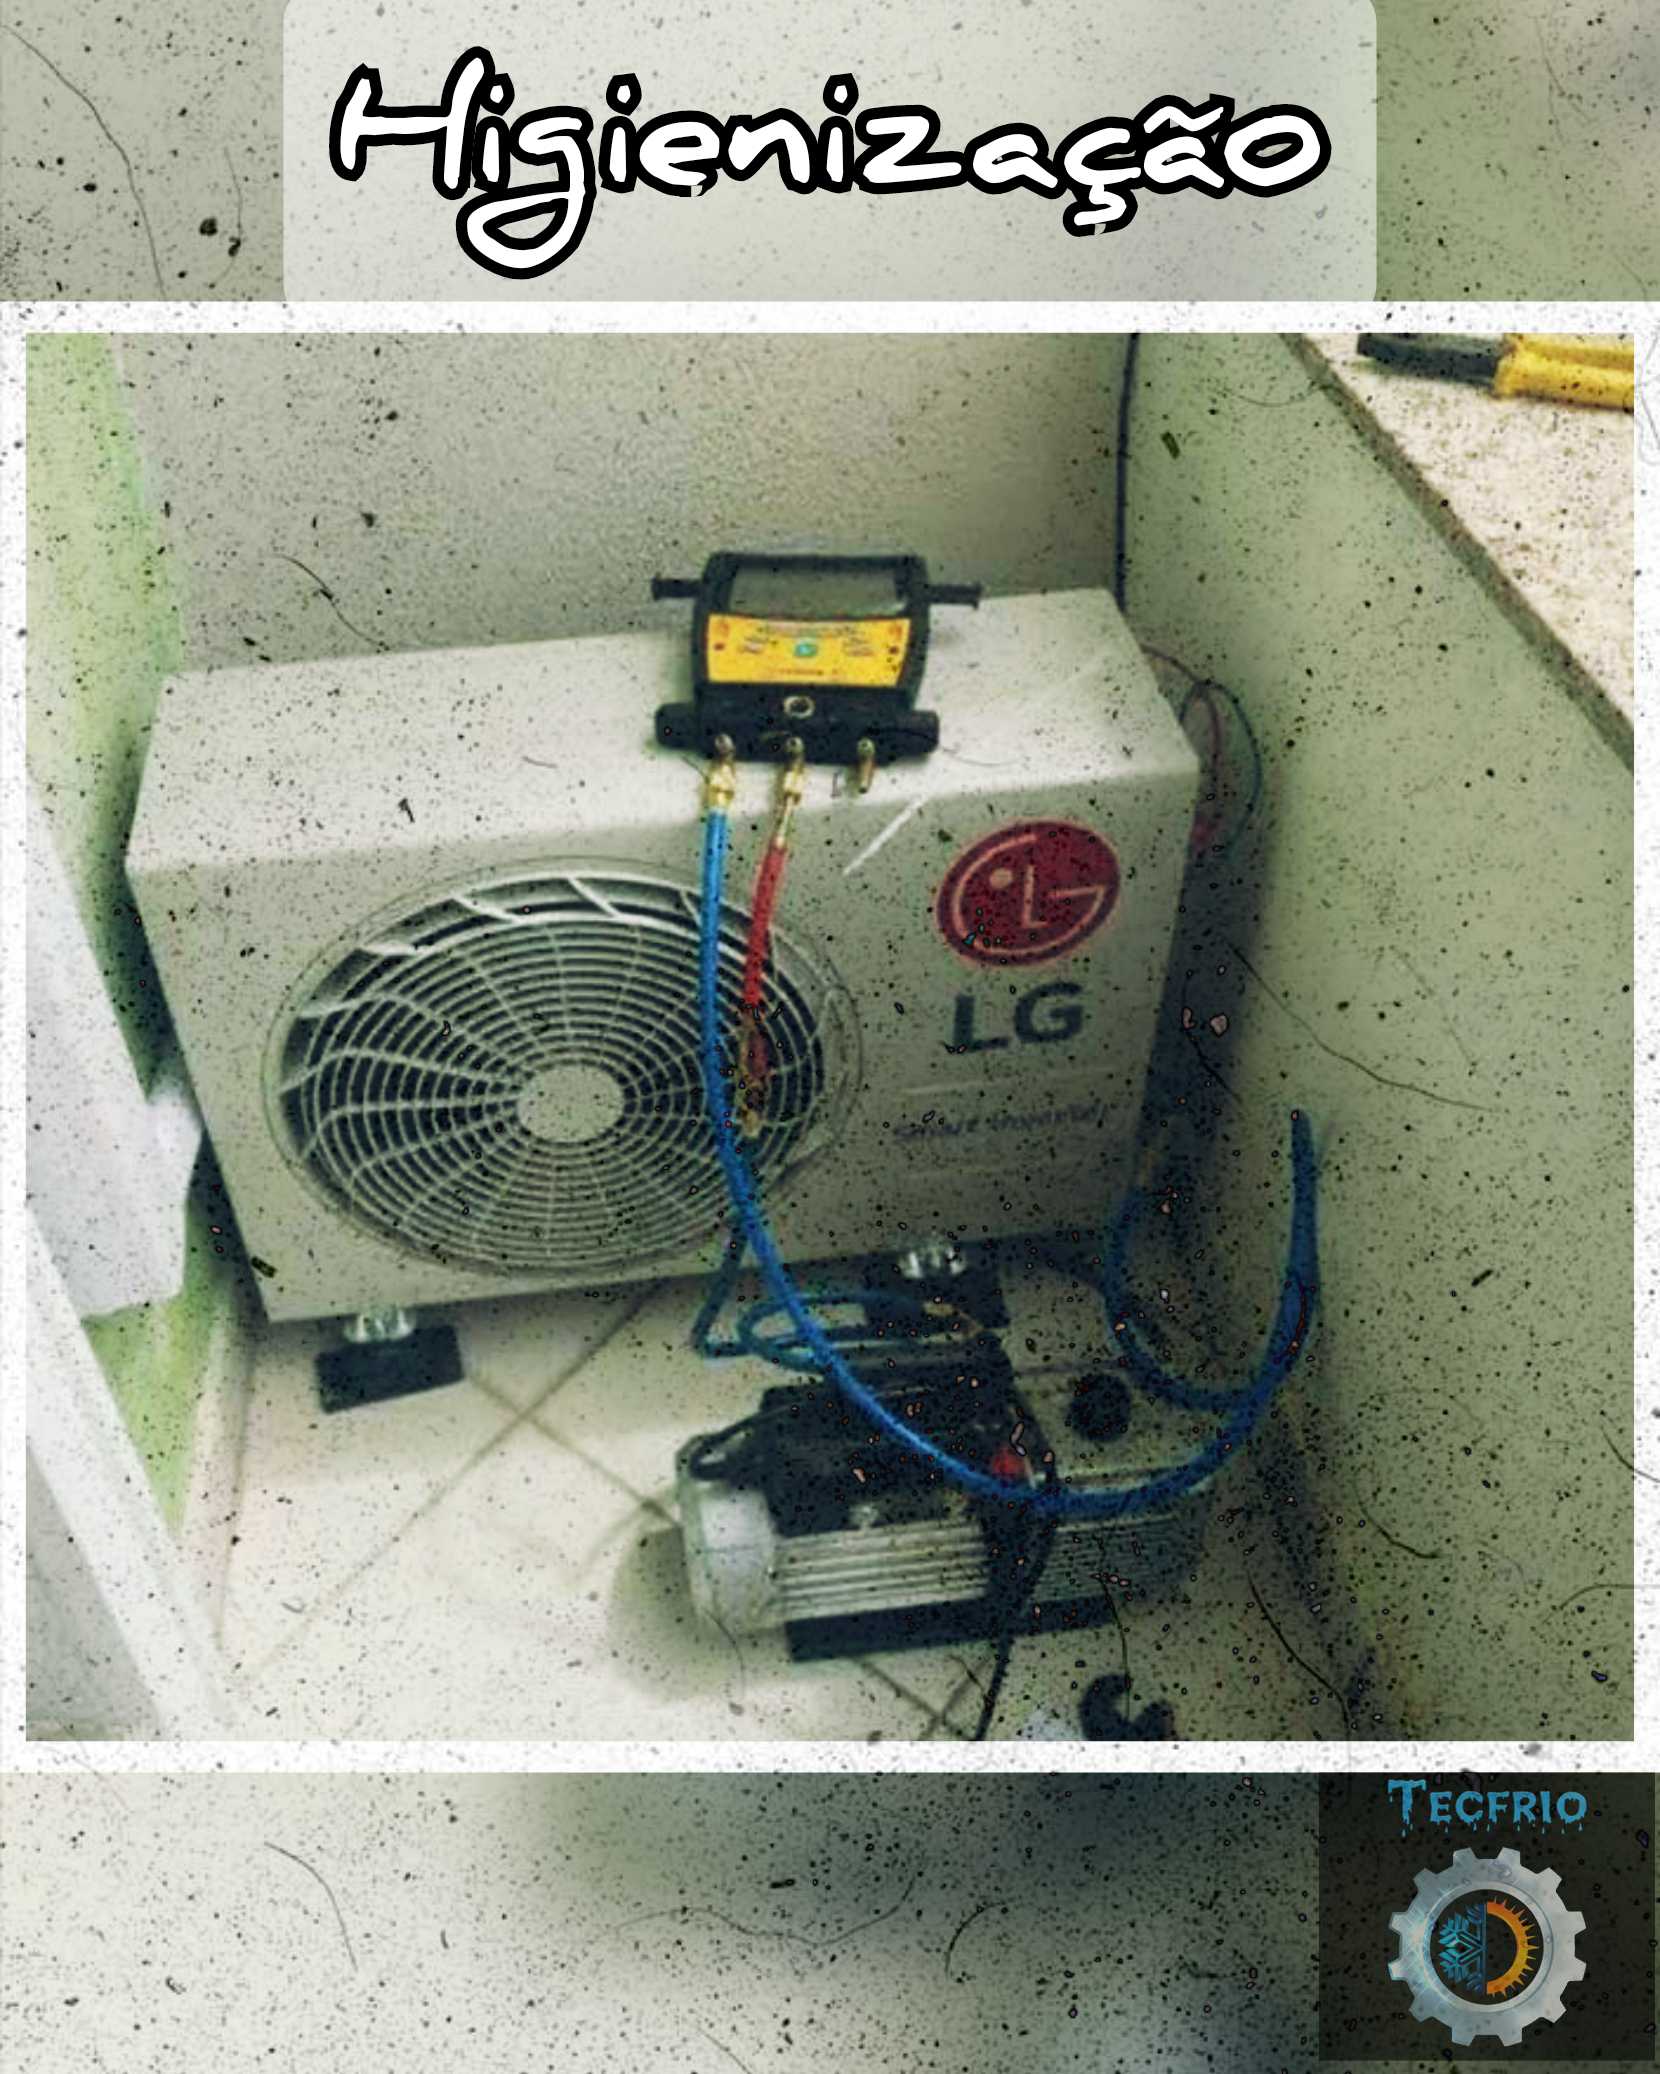 Instalação de Ar Condicionado em Limeira SP